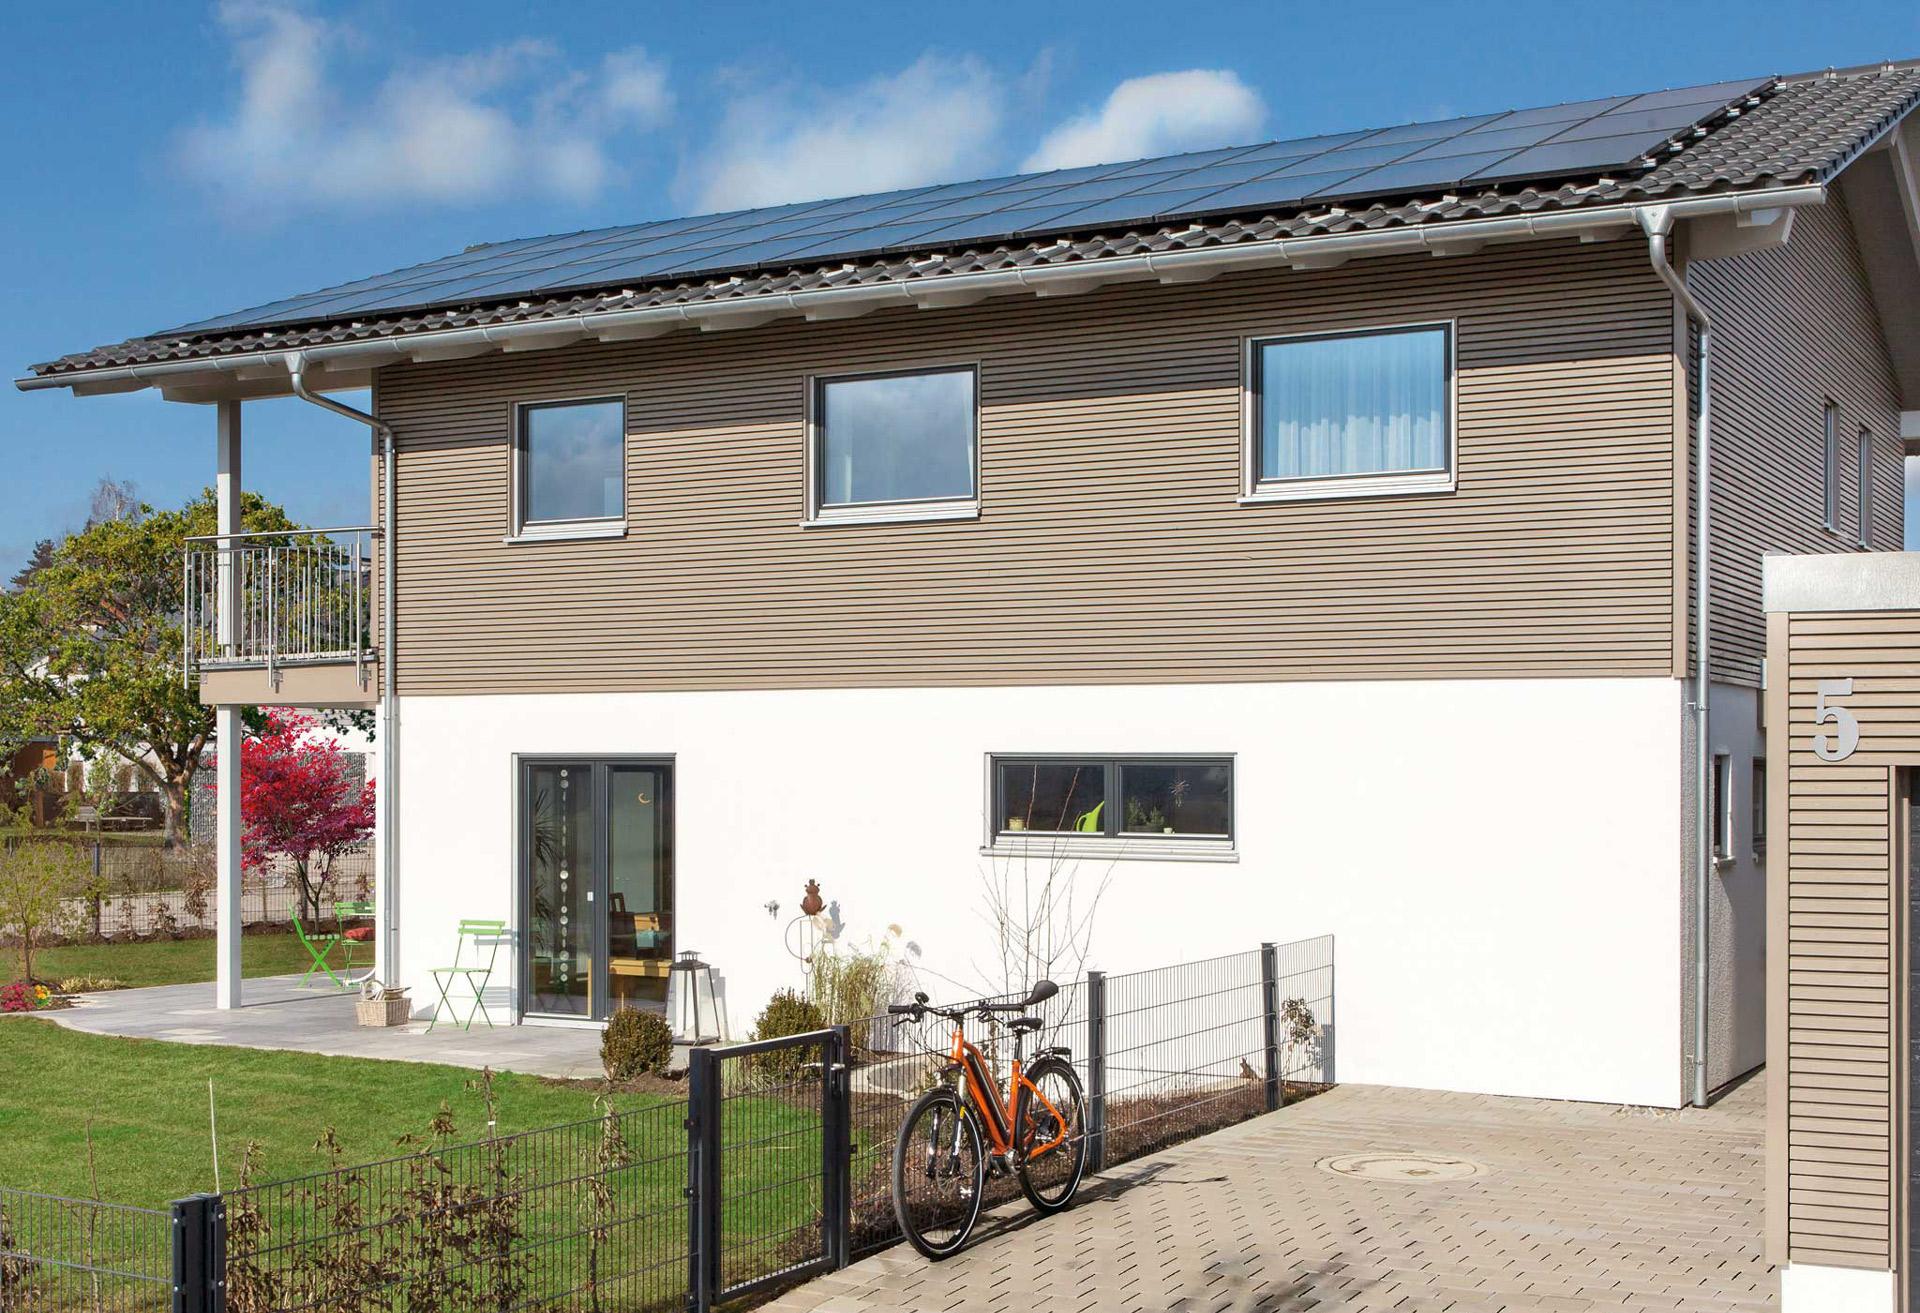 Maison d'efficacité énergétique avec système photovoltaïque et stockage d'énergie